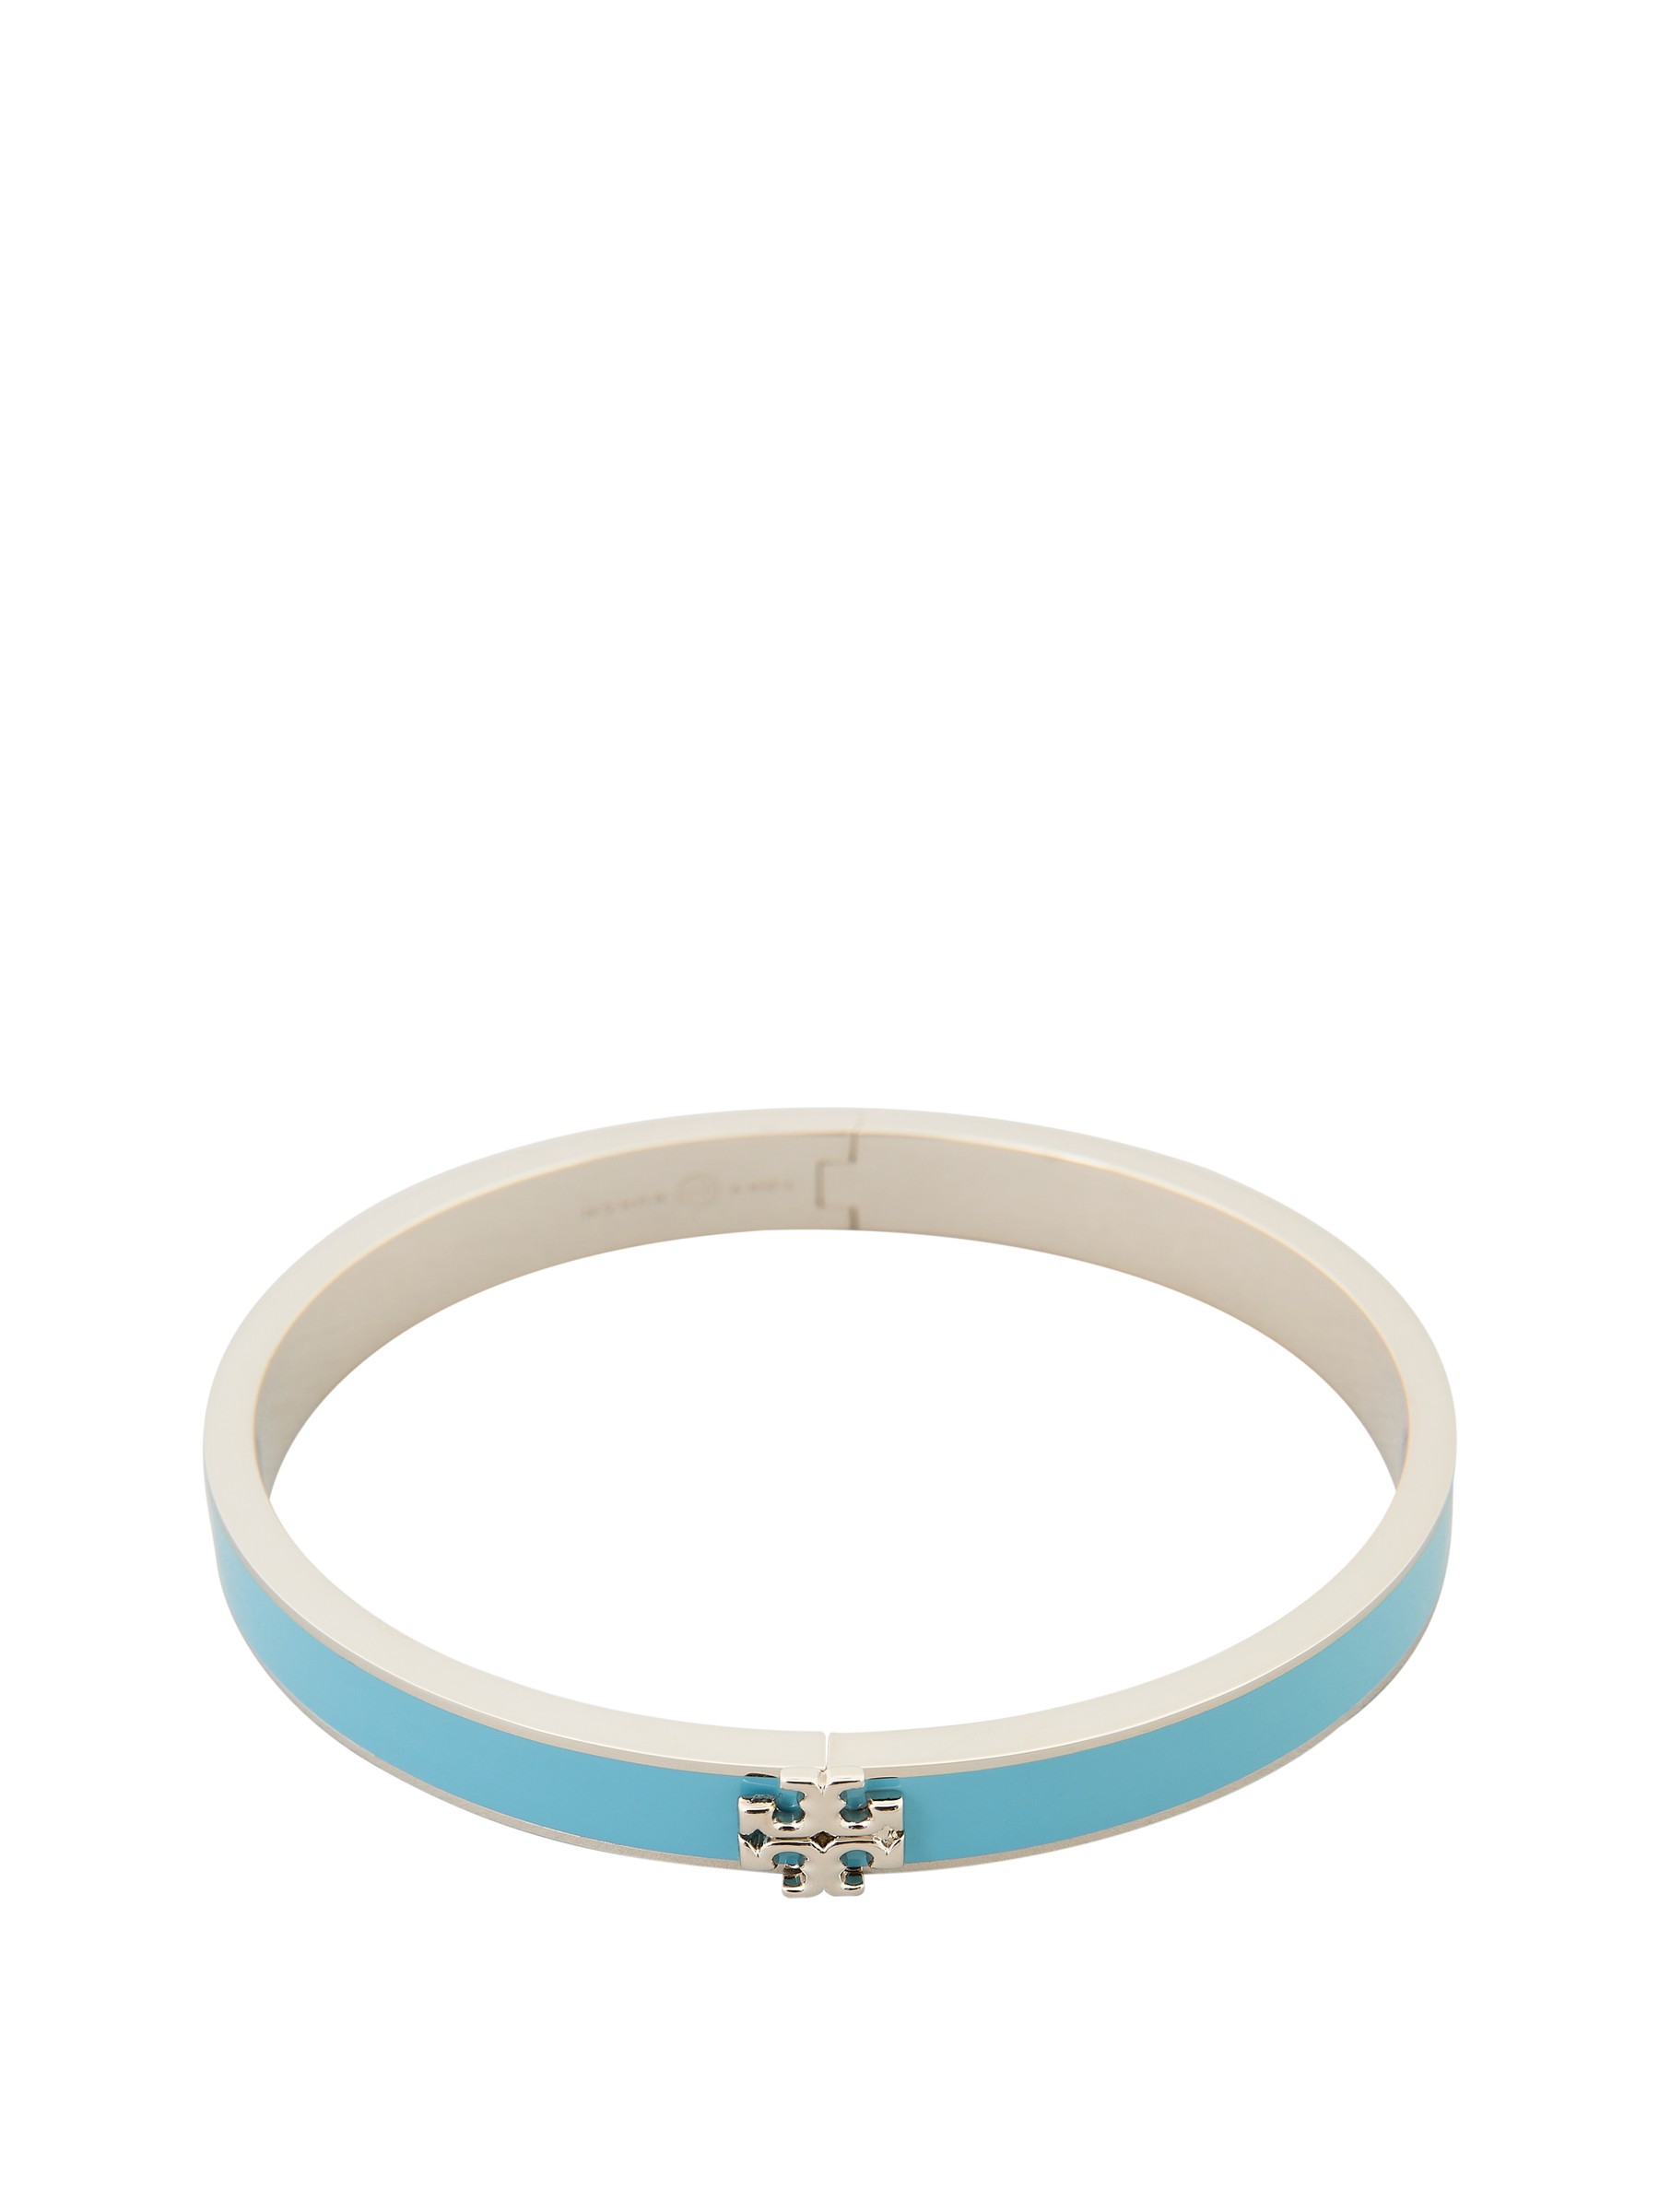 Tory Burch Bracelet 'Kira' Light blue | Bangles & Bracelets